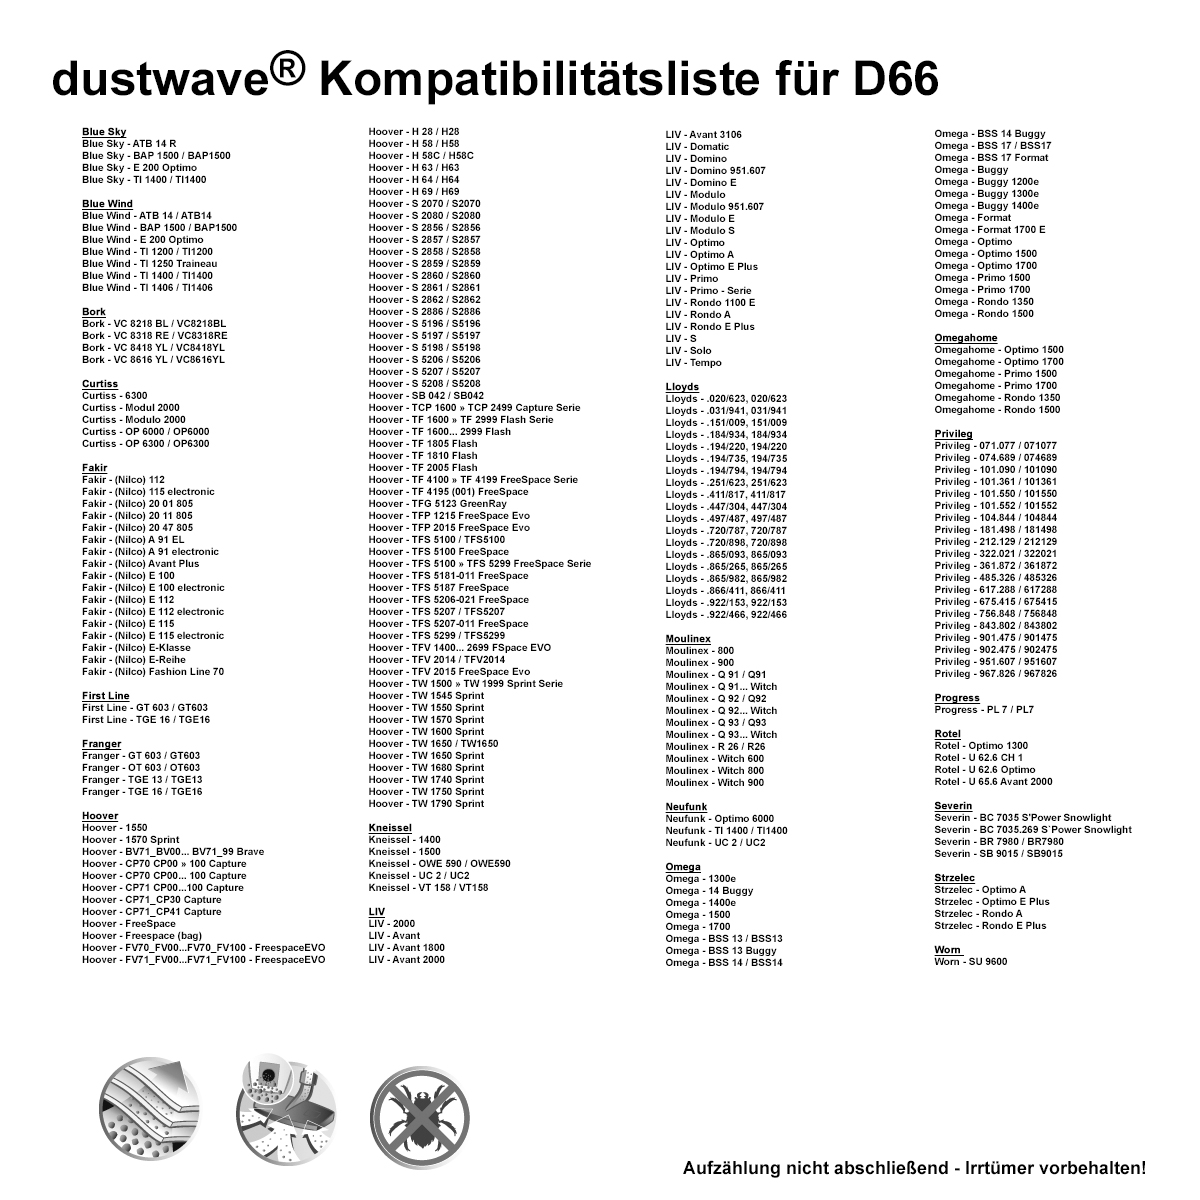 Dustwave® 10 Staubsaugerbeutel für Blue Wind TI 1400 / TI1400 - hocheffizient, mehrlagiges Mikrovlies mit Hygieneverschluss - Made in Germany